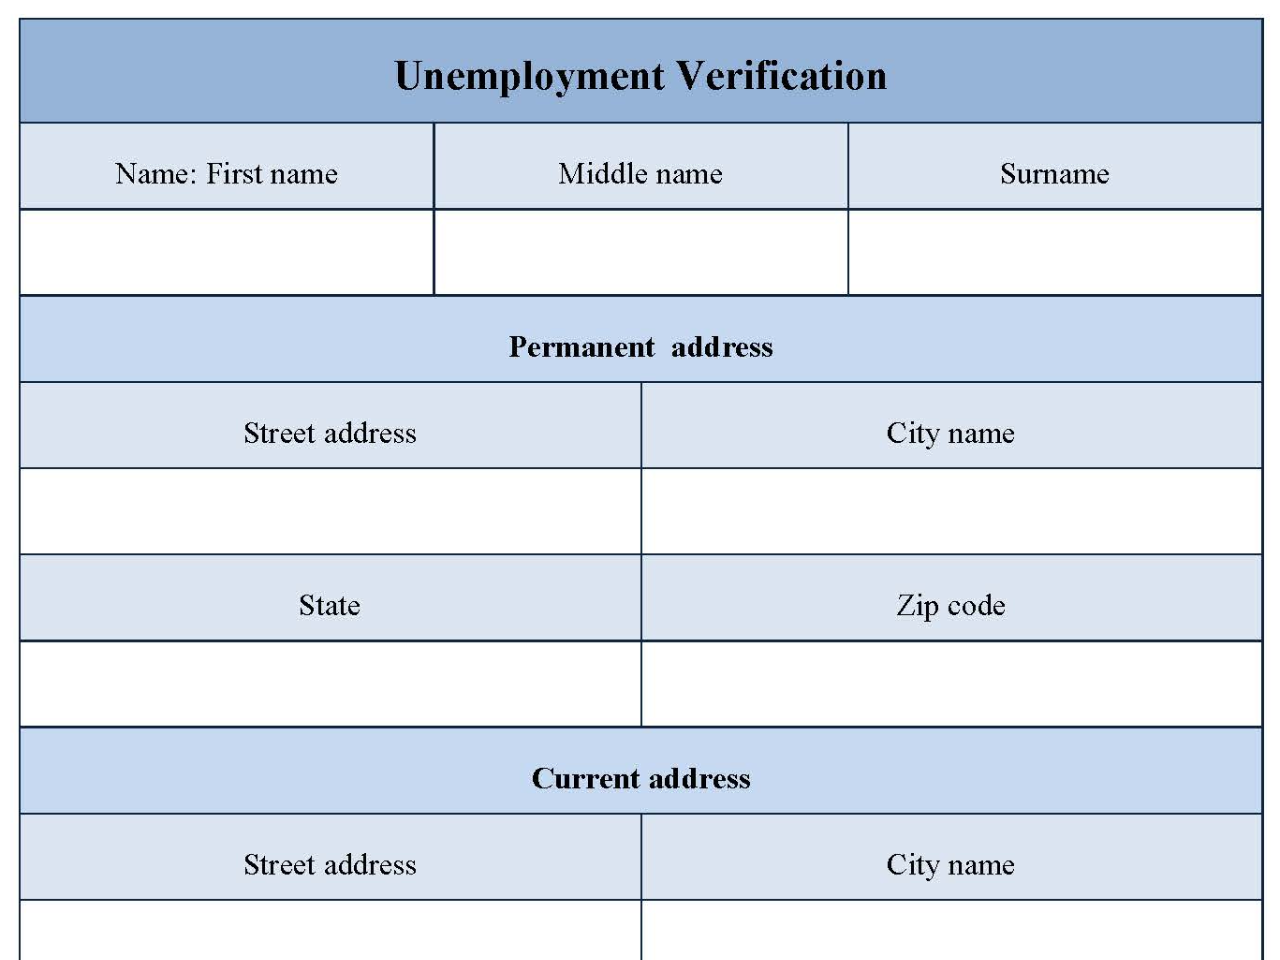 Unemployment Verification Form